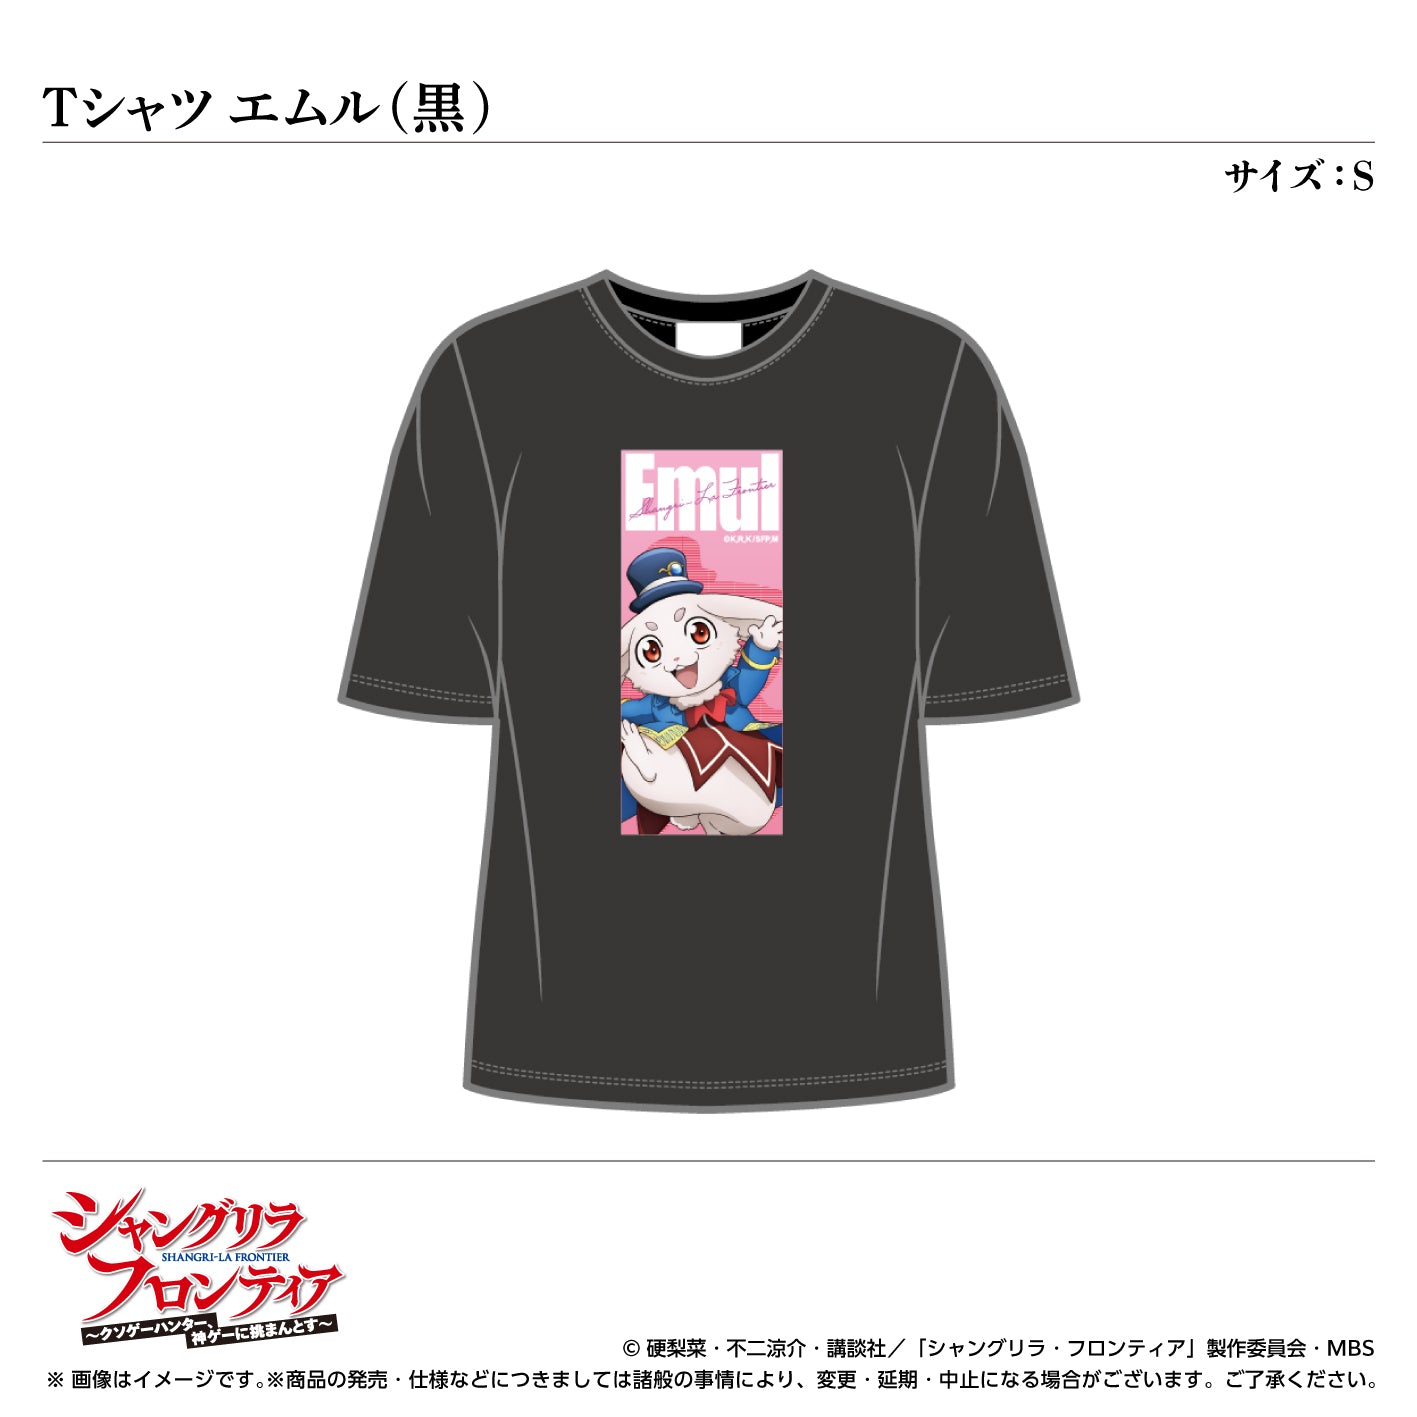 T -shirt / Emul (black) Size: S <TV anime "Shangri -La Frontier">